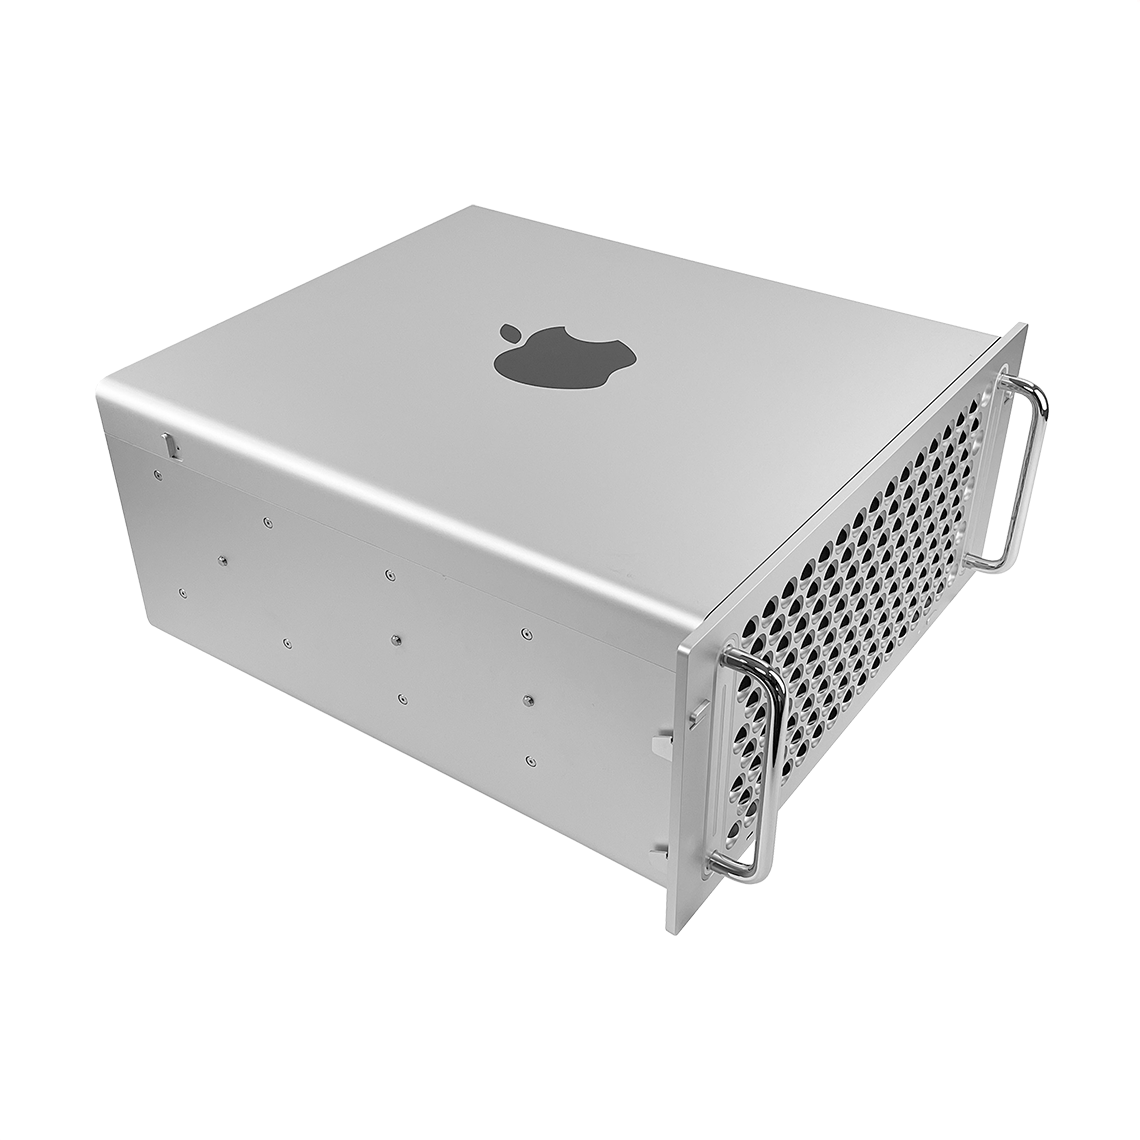 2019 Apple Mac Pro - Intel Xeon 16-Core, 192GB RAM, 1TB Flash, AMD Radeon Pro Vega II Duo 64GB, Rack Mount, Grade A